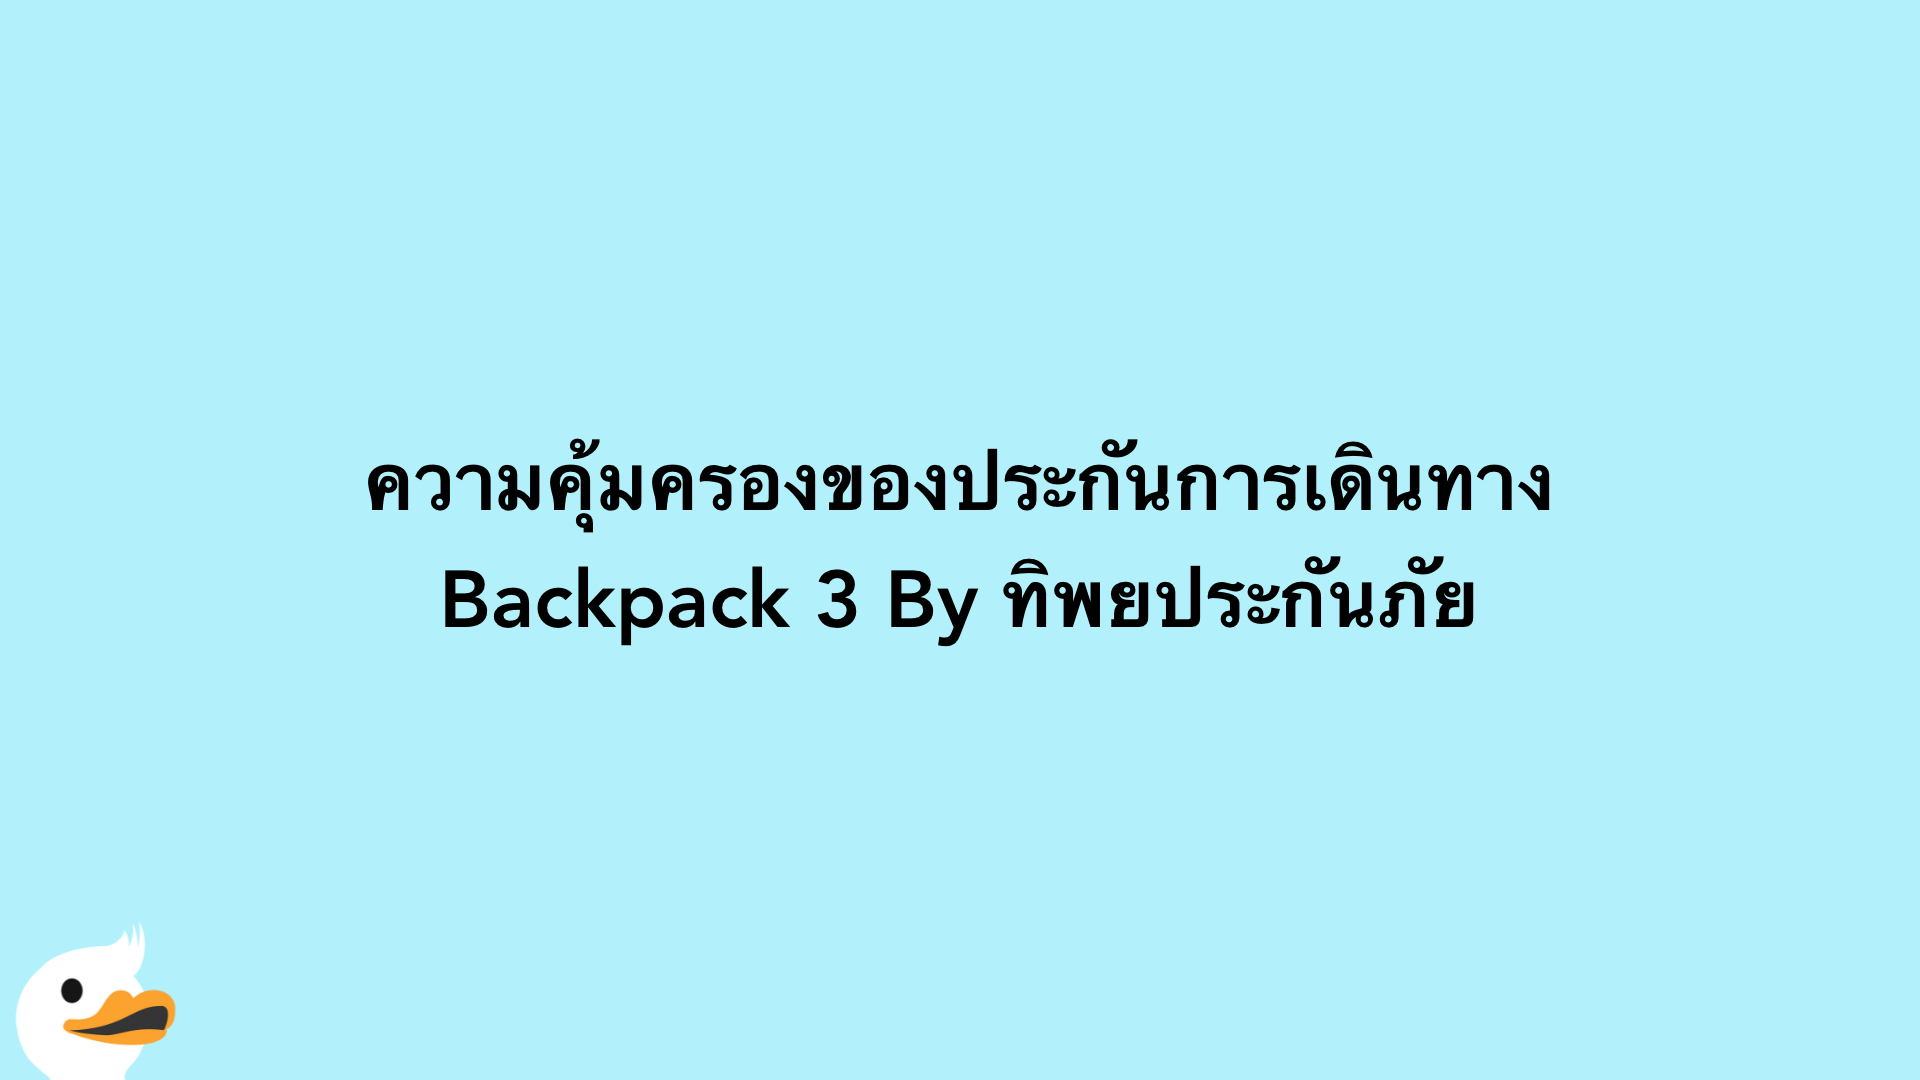 ความคุ้มครองของประกันการเดินทาง Backpack 3 By ทิพยประกันภัย